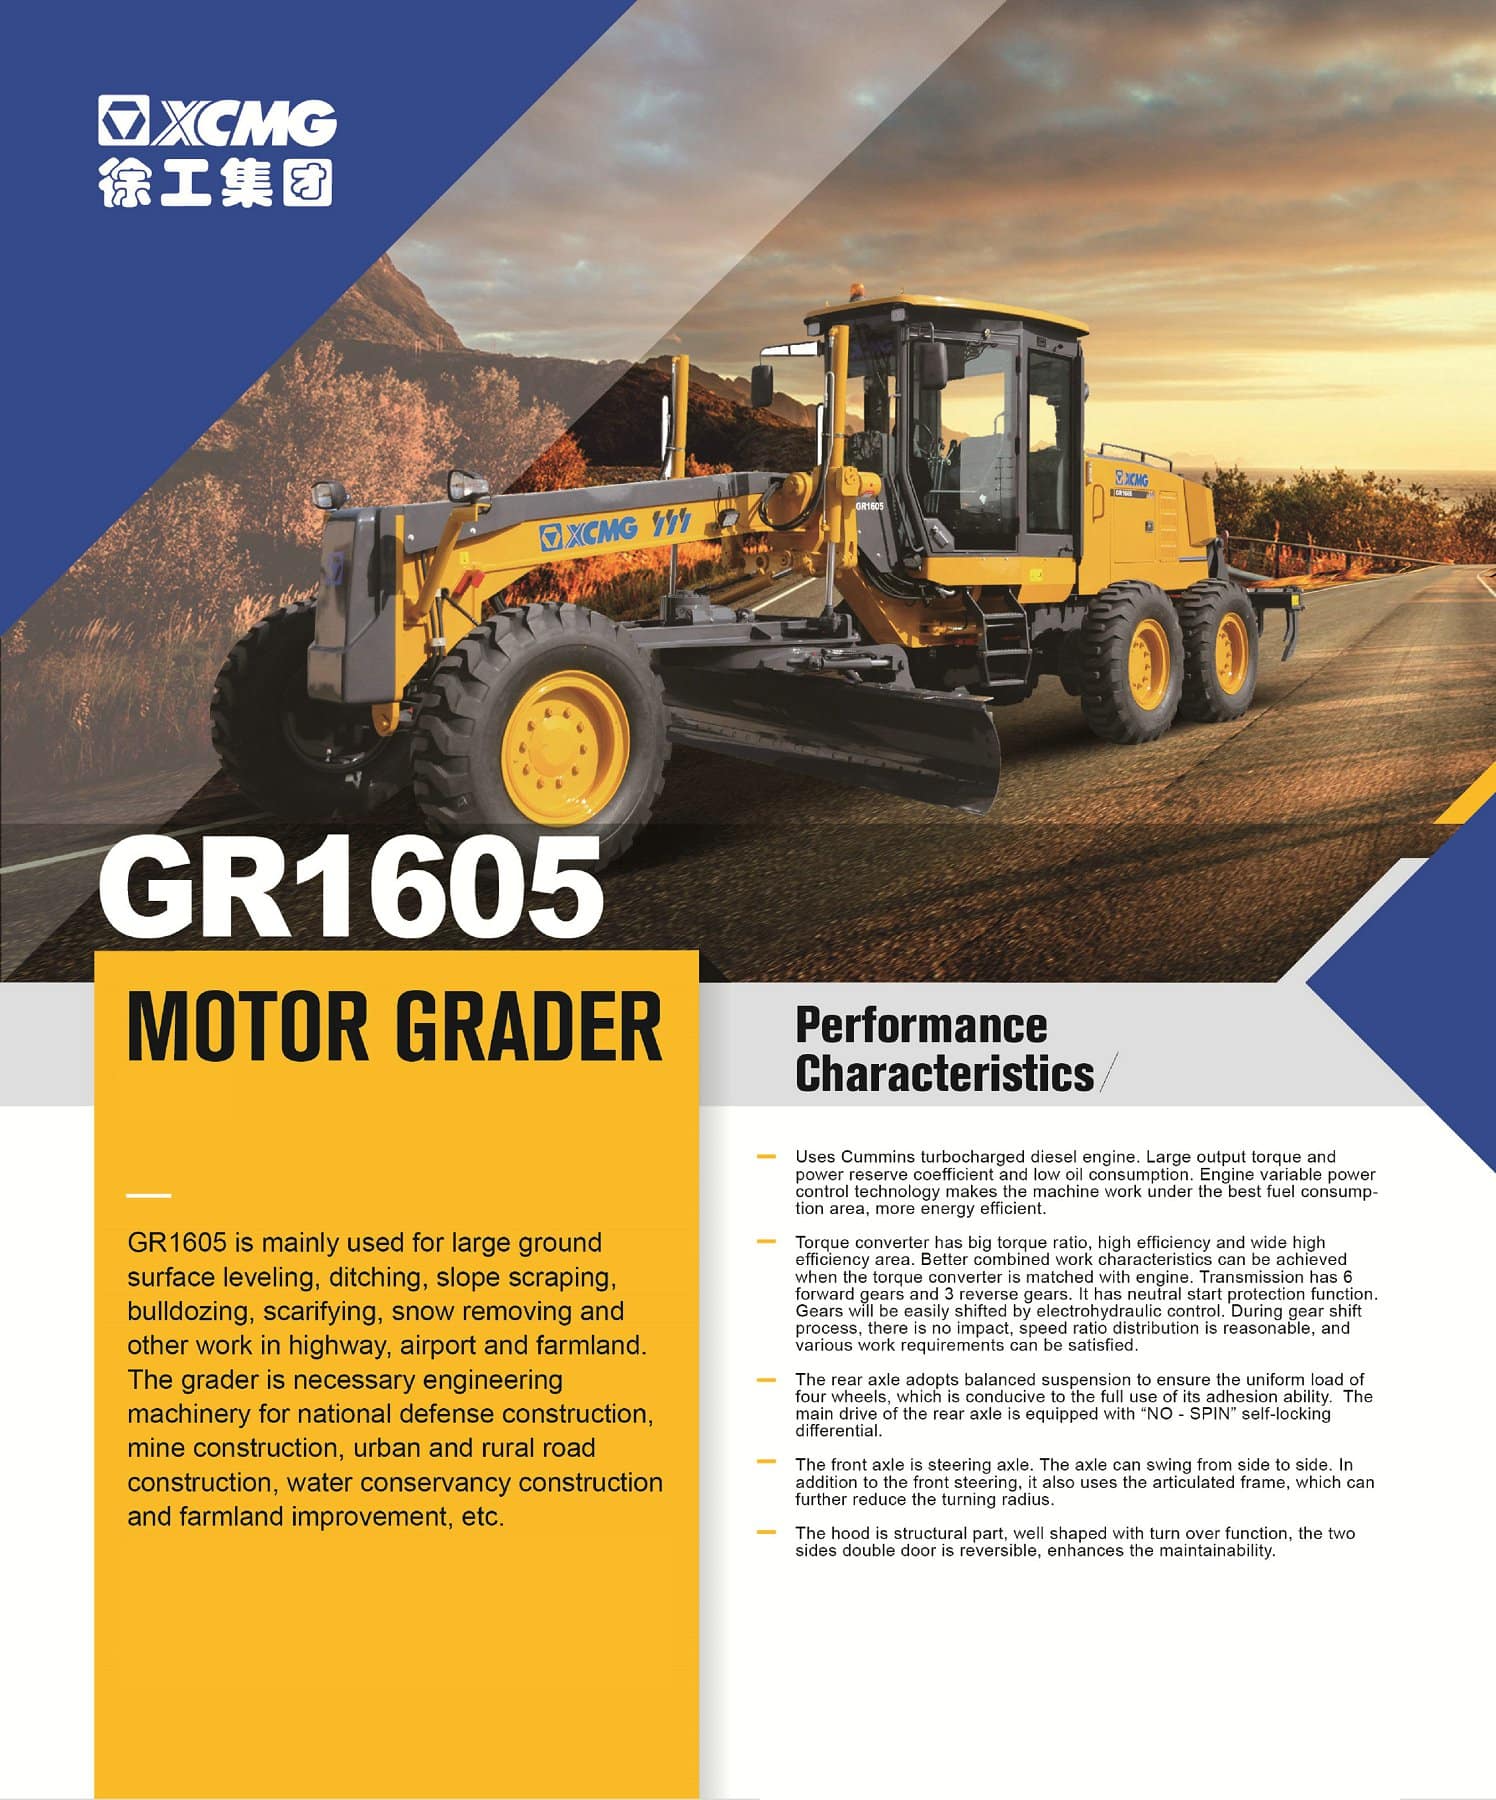 XCMG Official Motor Grader GR1605 for sale